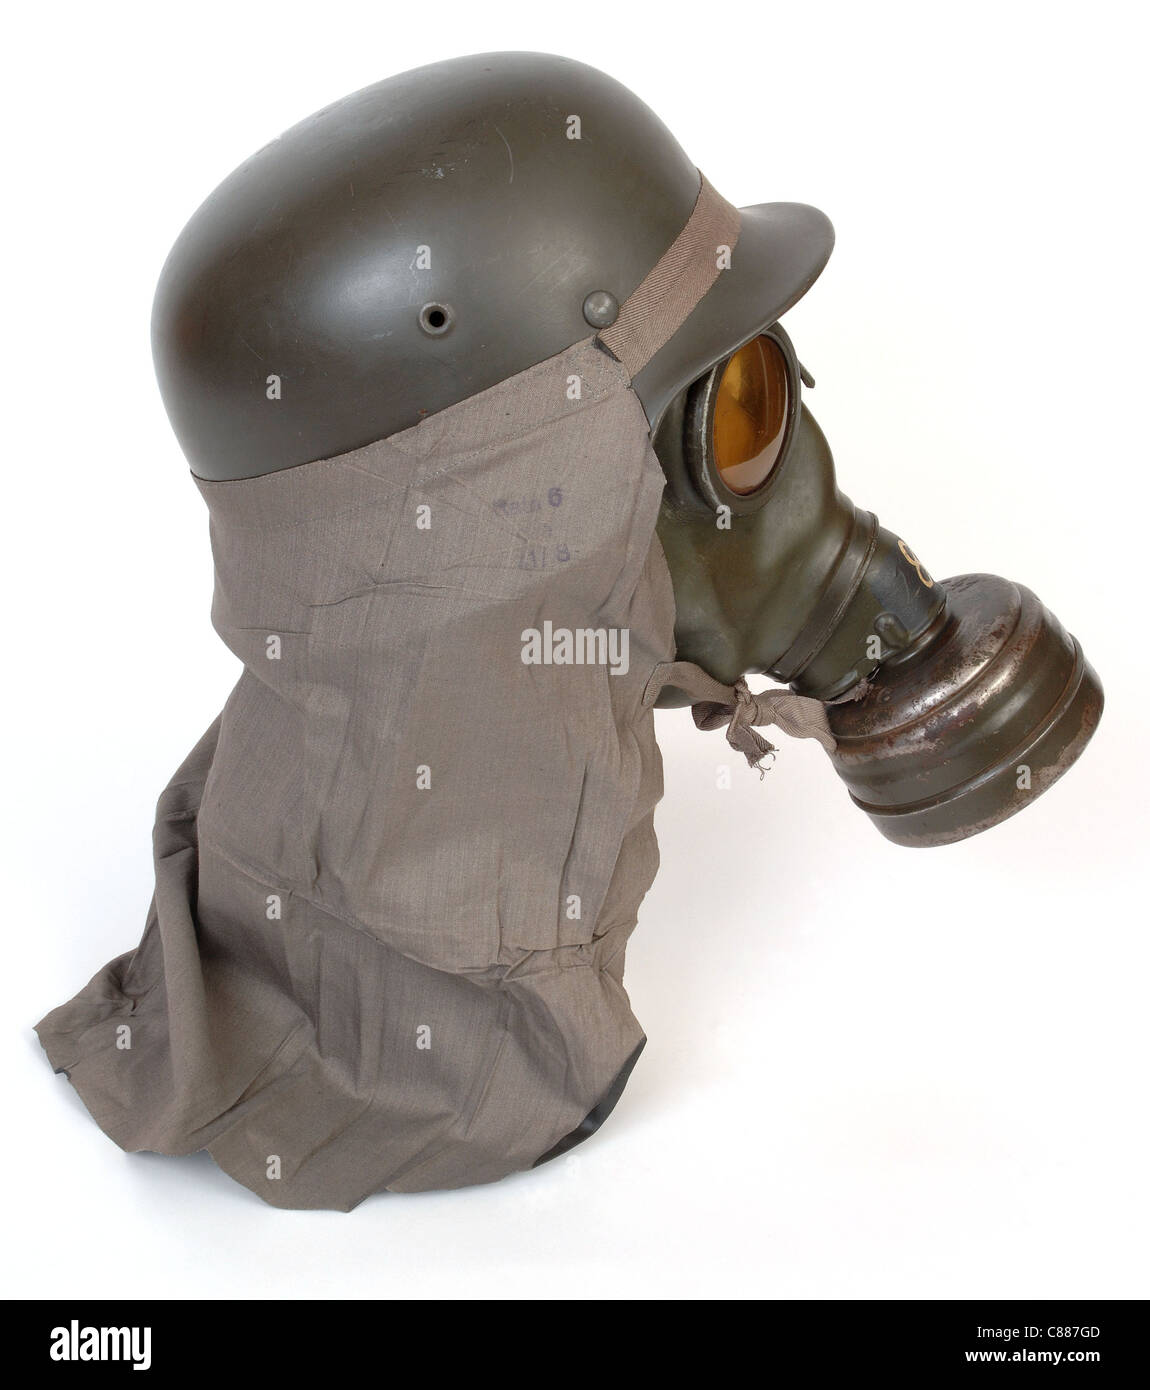 Masque à gaz allemand Banque d'images détourées - Alamy